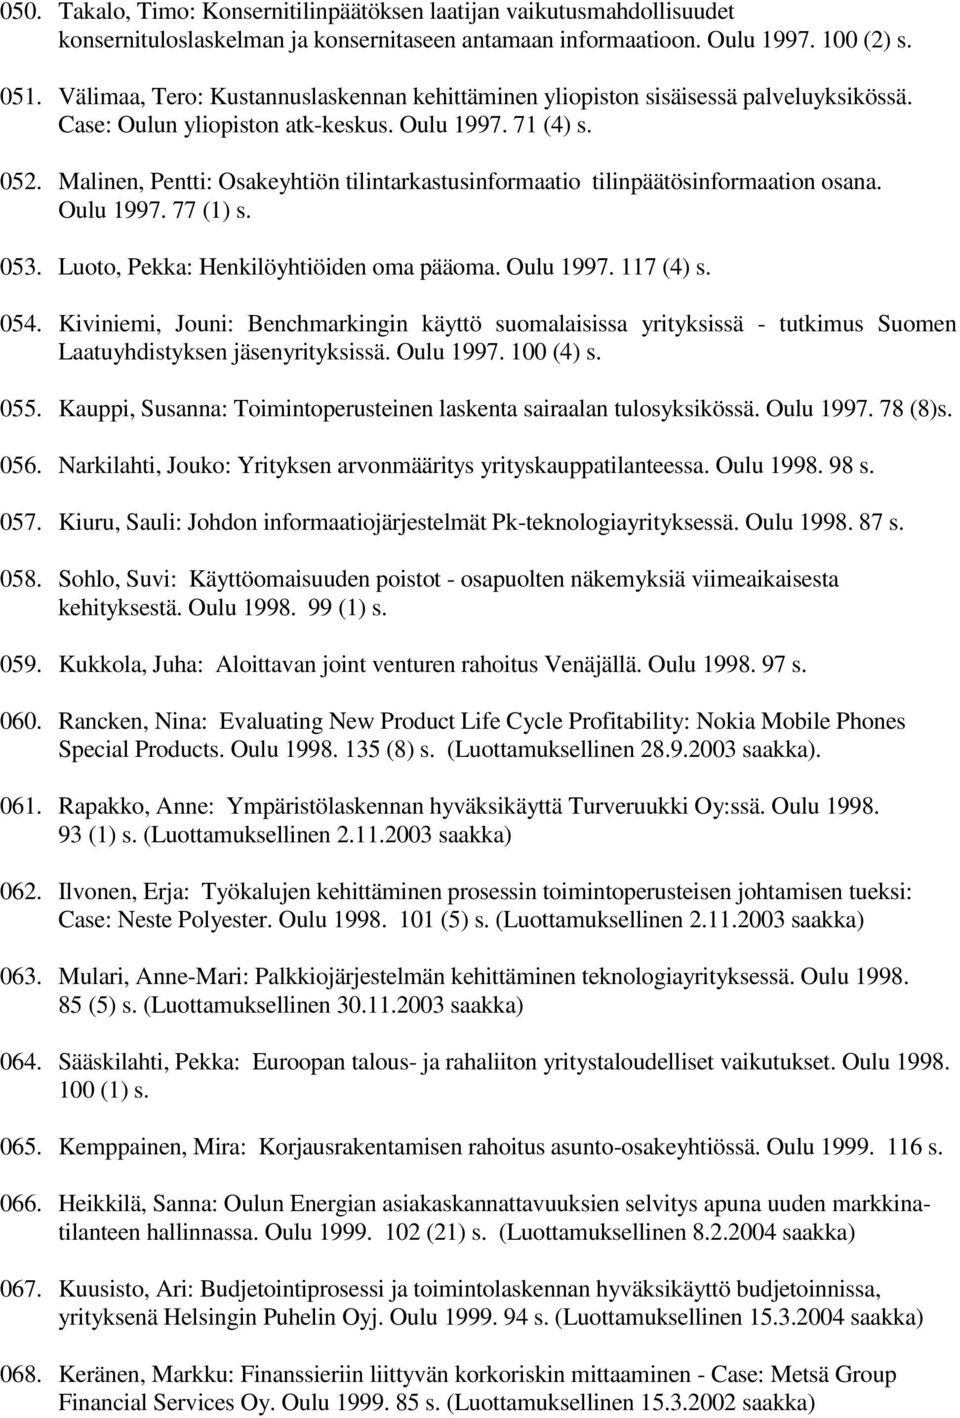 Malinen, Pentti: Osakeyhtiön tilintarkastusinformaatio tilinpäätösinformaation osana. Oulu 1997. 77 (1) s. 053. Luoto, Pekka: Henkilöyhtiöiden oma pääoma. Oulu 1997. 117 (4) s. 054.